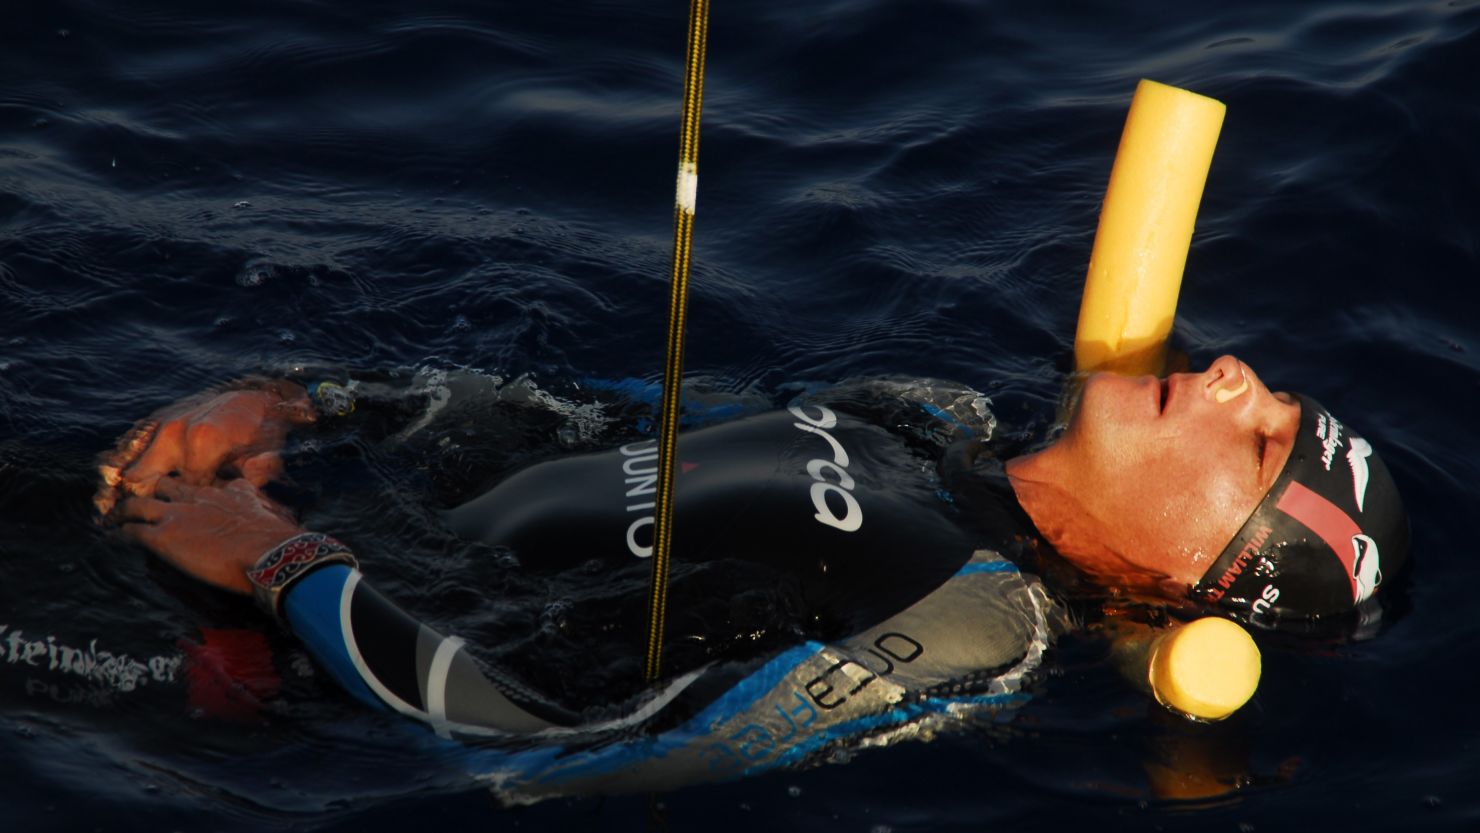 Diver William Trubridge has achieved his 16th world record.